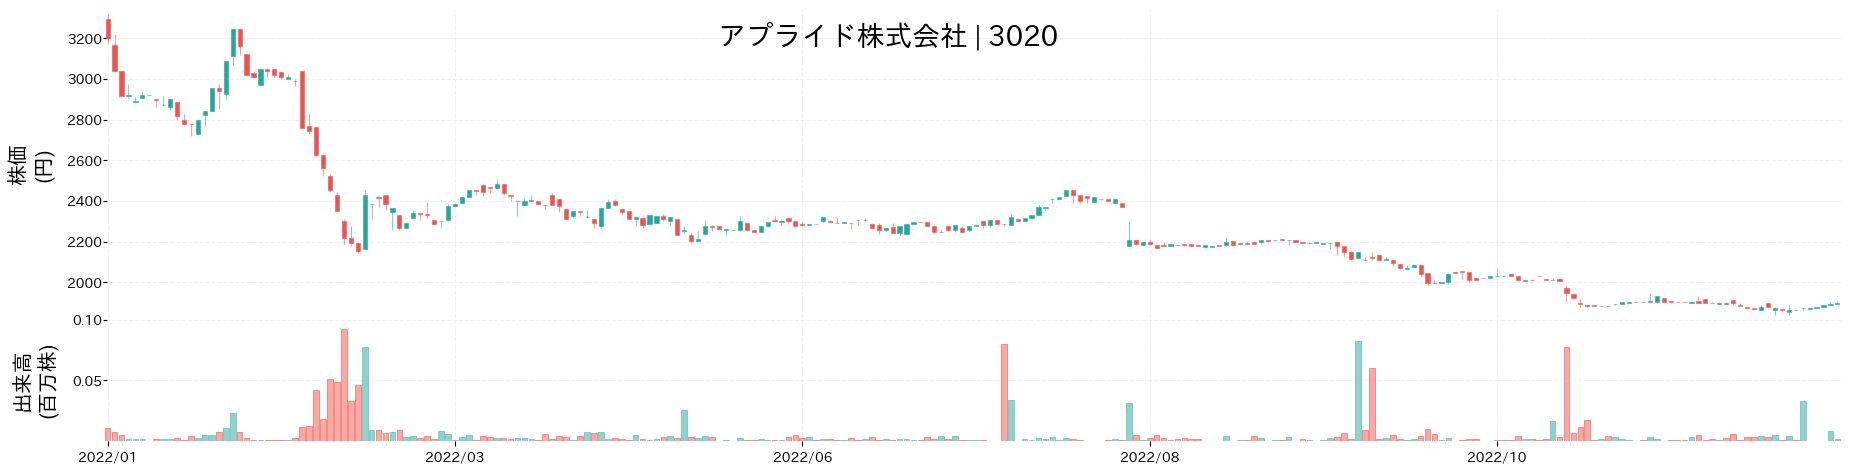 アプライドの株価推移(2022)